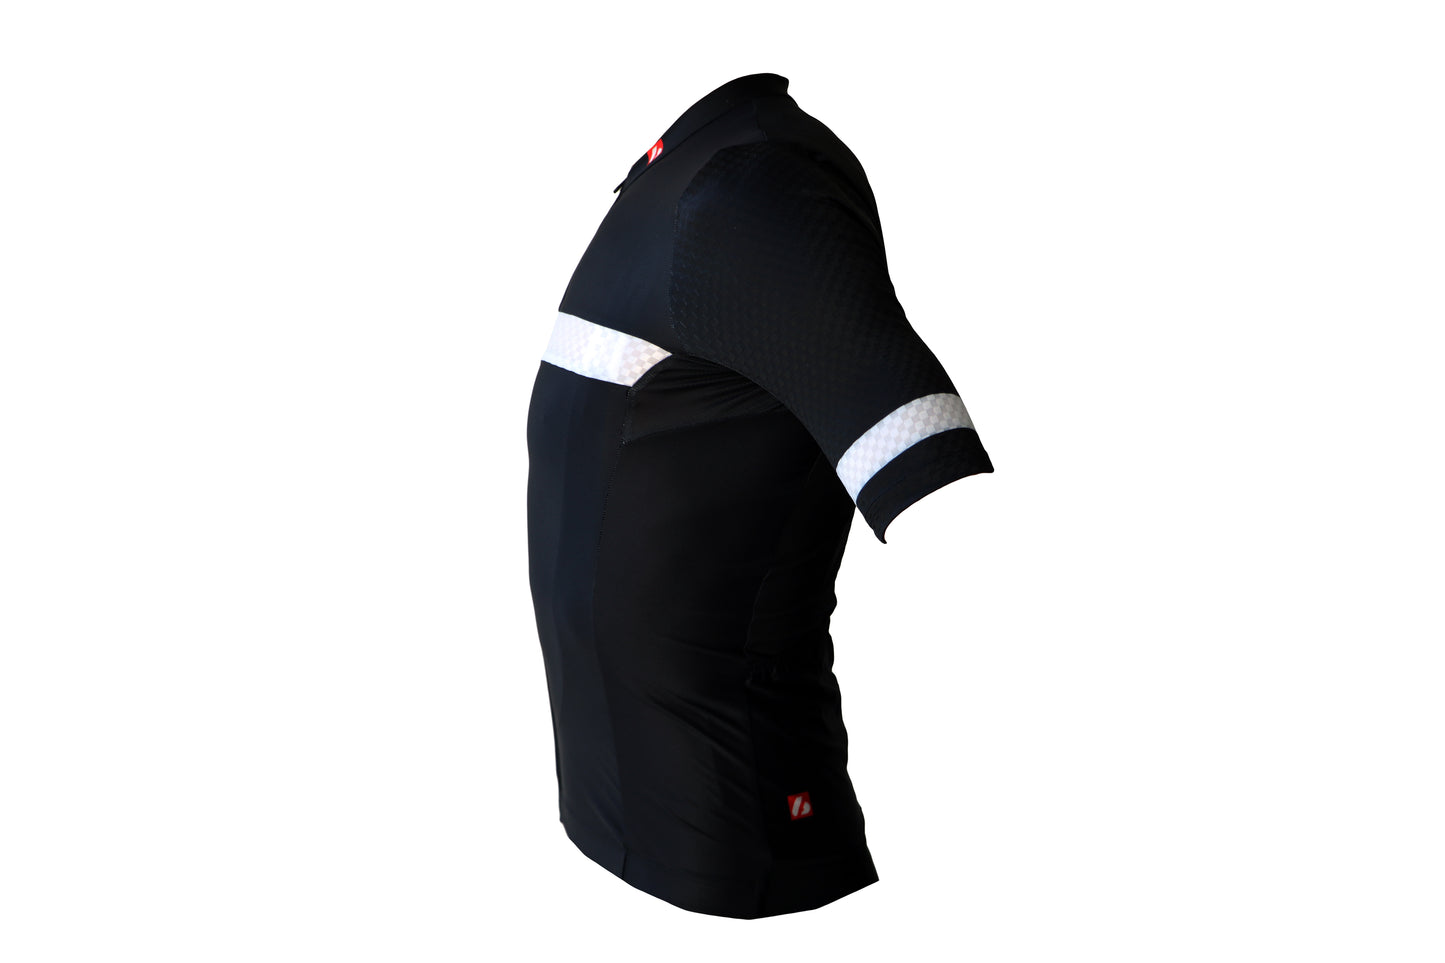 Bici textil-jersey corto con ejercicio, blanco y negro